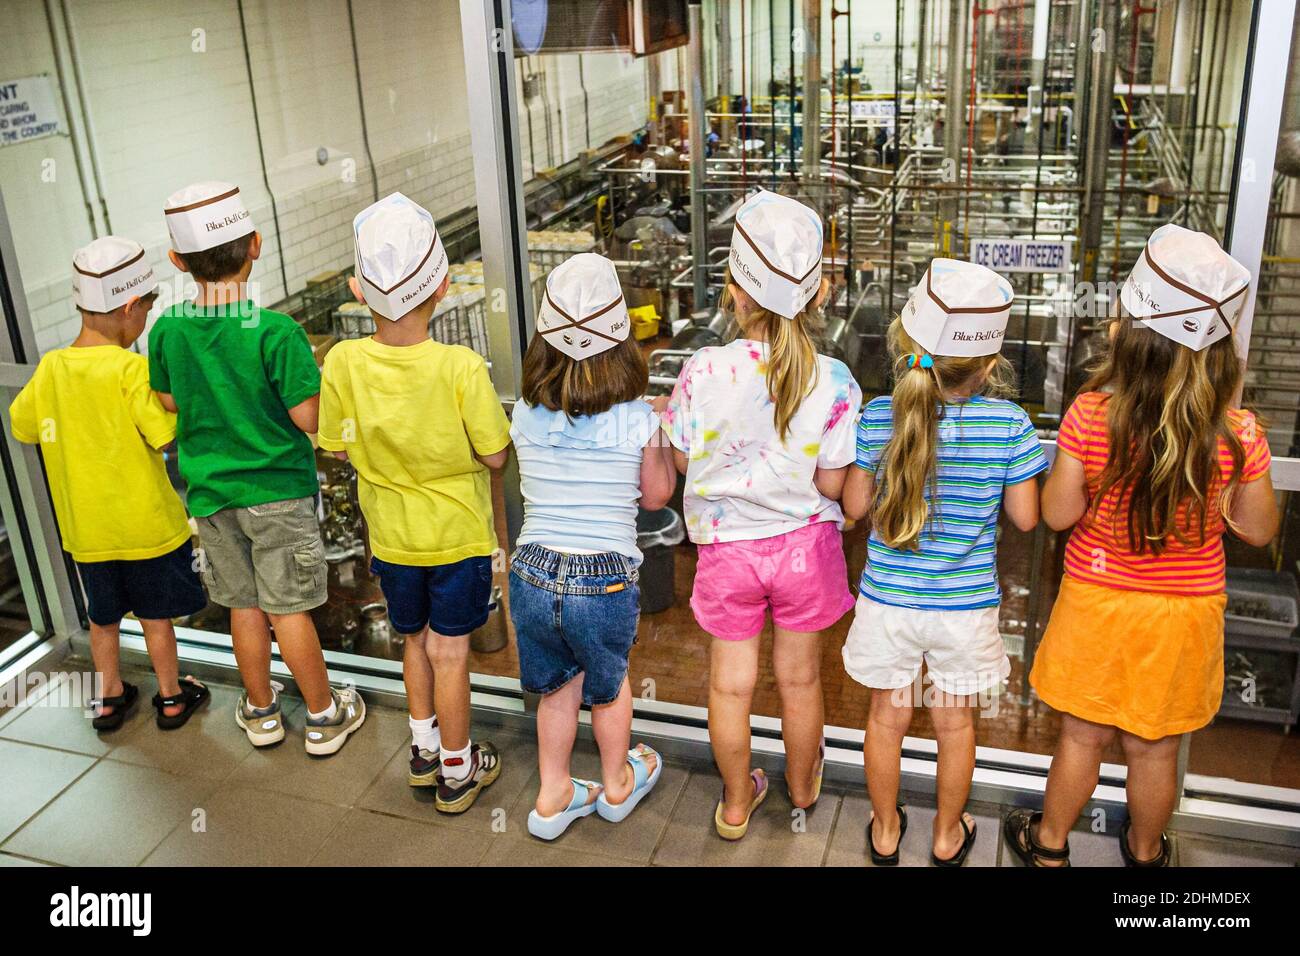 Alabama Sylacauga Blue Bell Creameries gelateria produzione di impianti, bambini ragazzi ragazze tour scuola gita studenti che indossano cappelli, looki Foto Stock